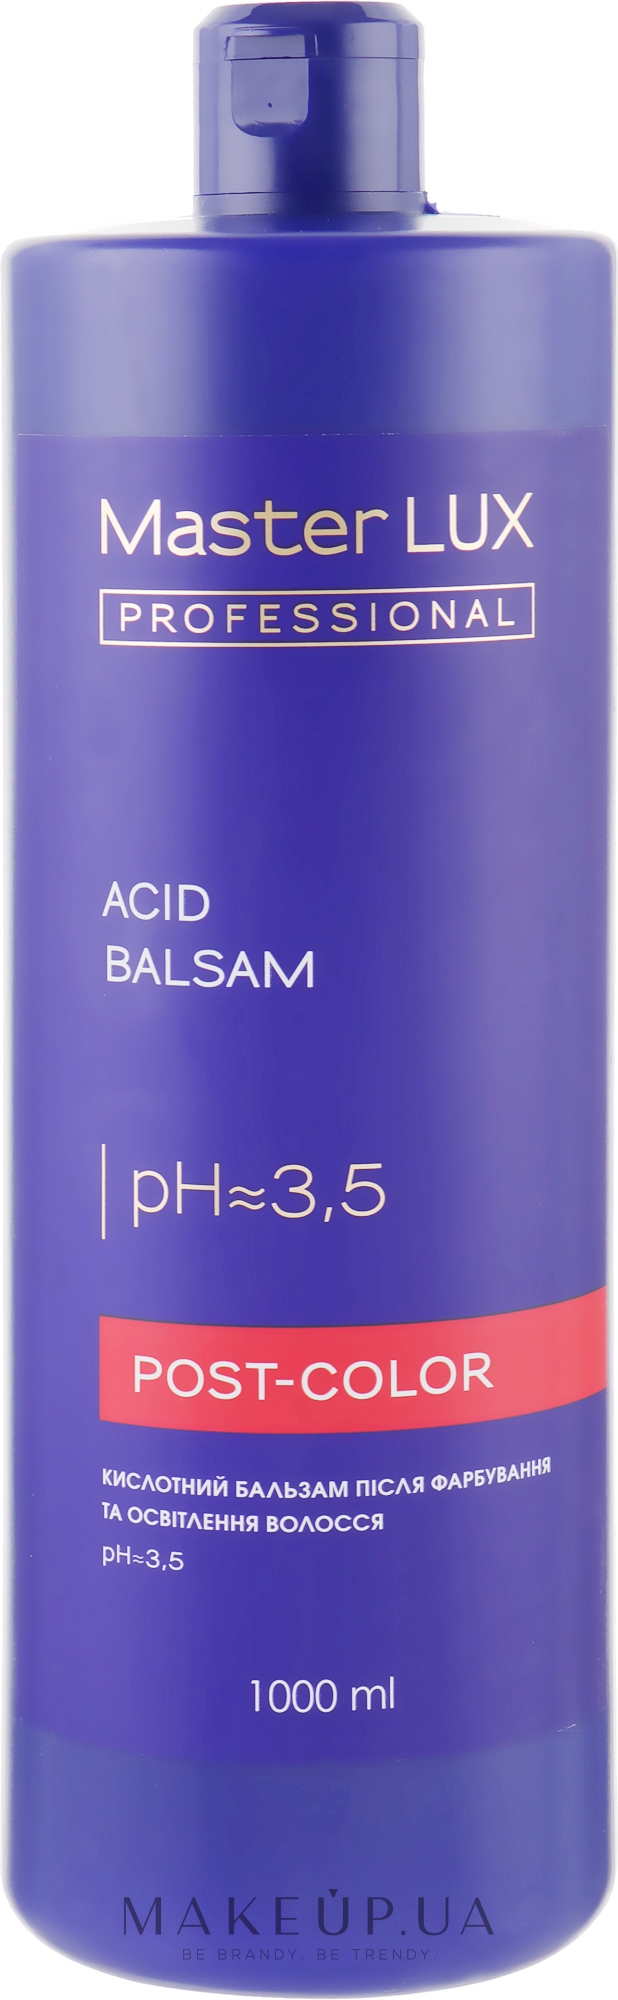 Кислотний бальзам после окрашивания и осветления волос - Master LUX Professional Acid Balsam Post Color — фото 1000ml